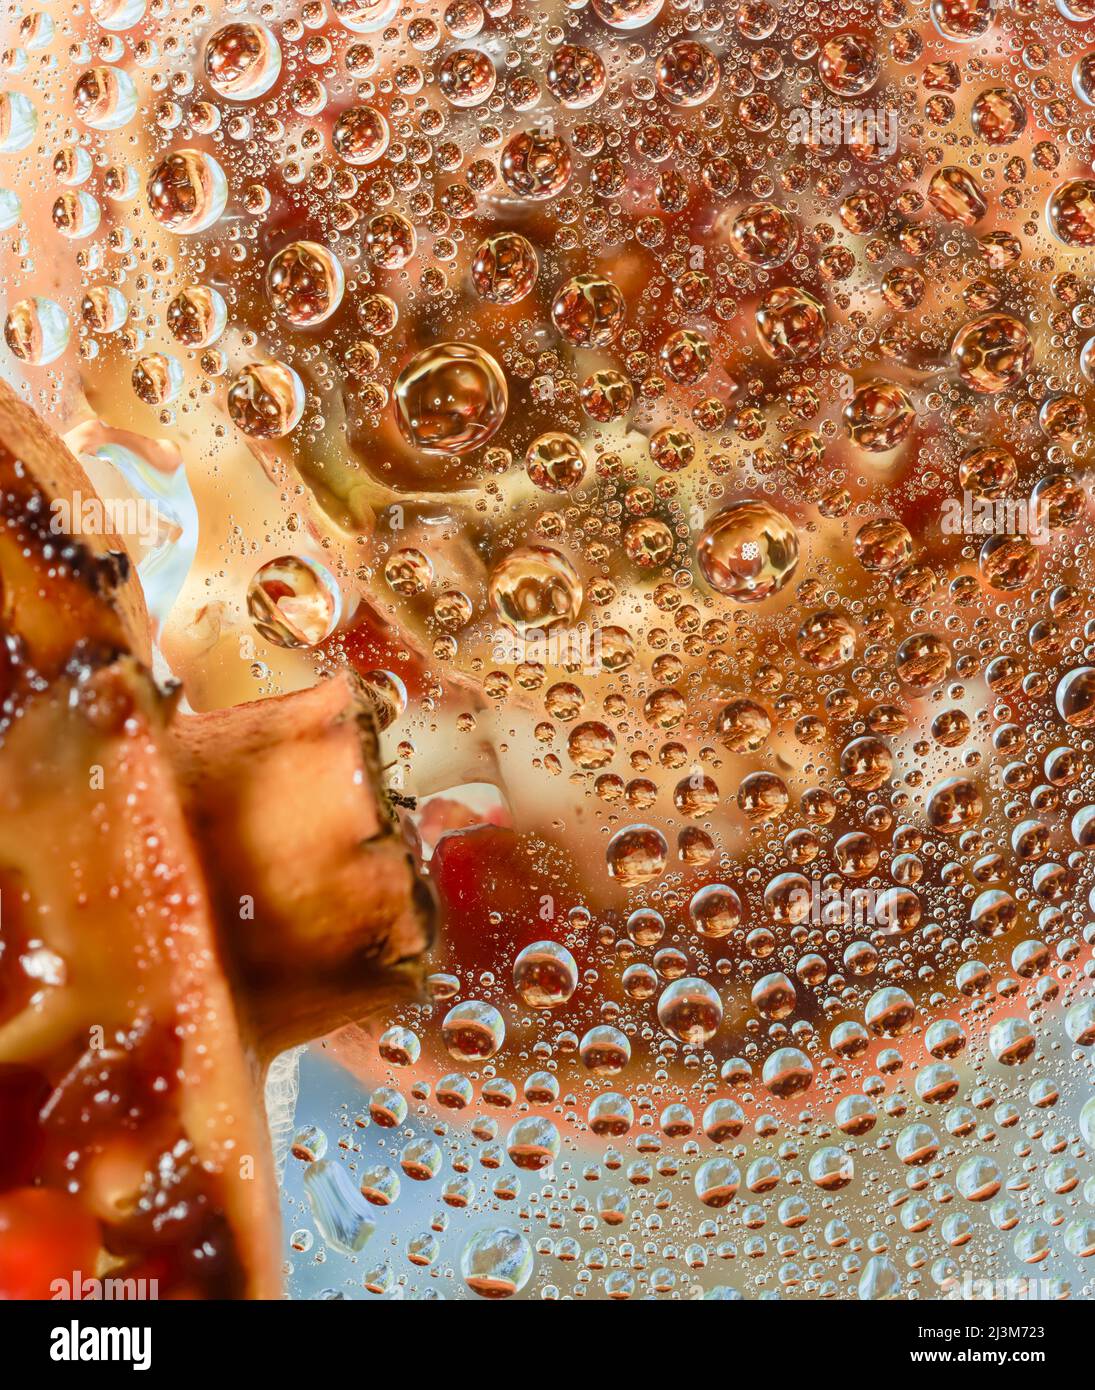 Kreative Makronahrung Stillleben von Granatapfel und Reflexion auf der geknittenen Oberfläche Stockfoto